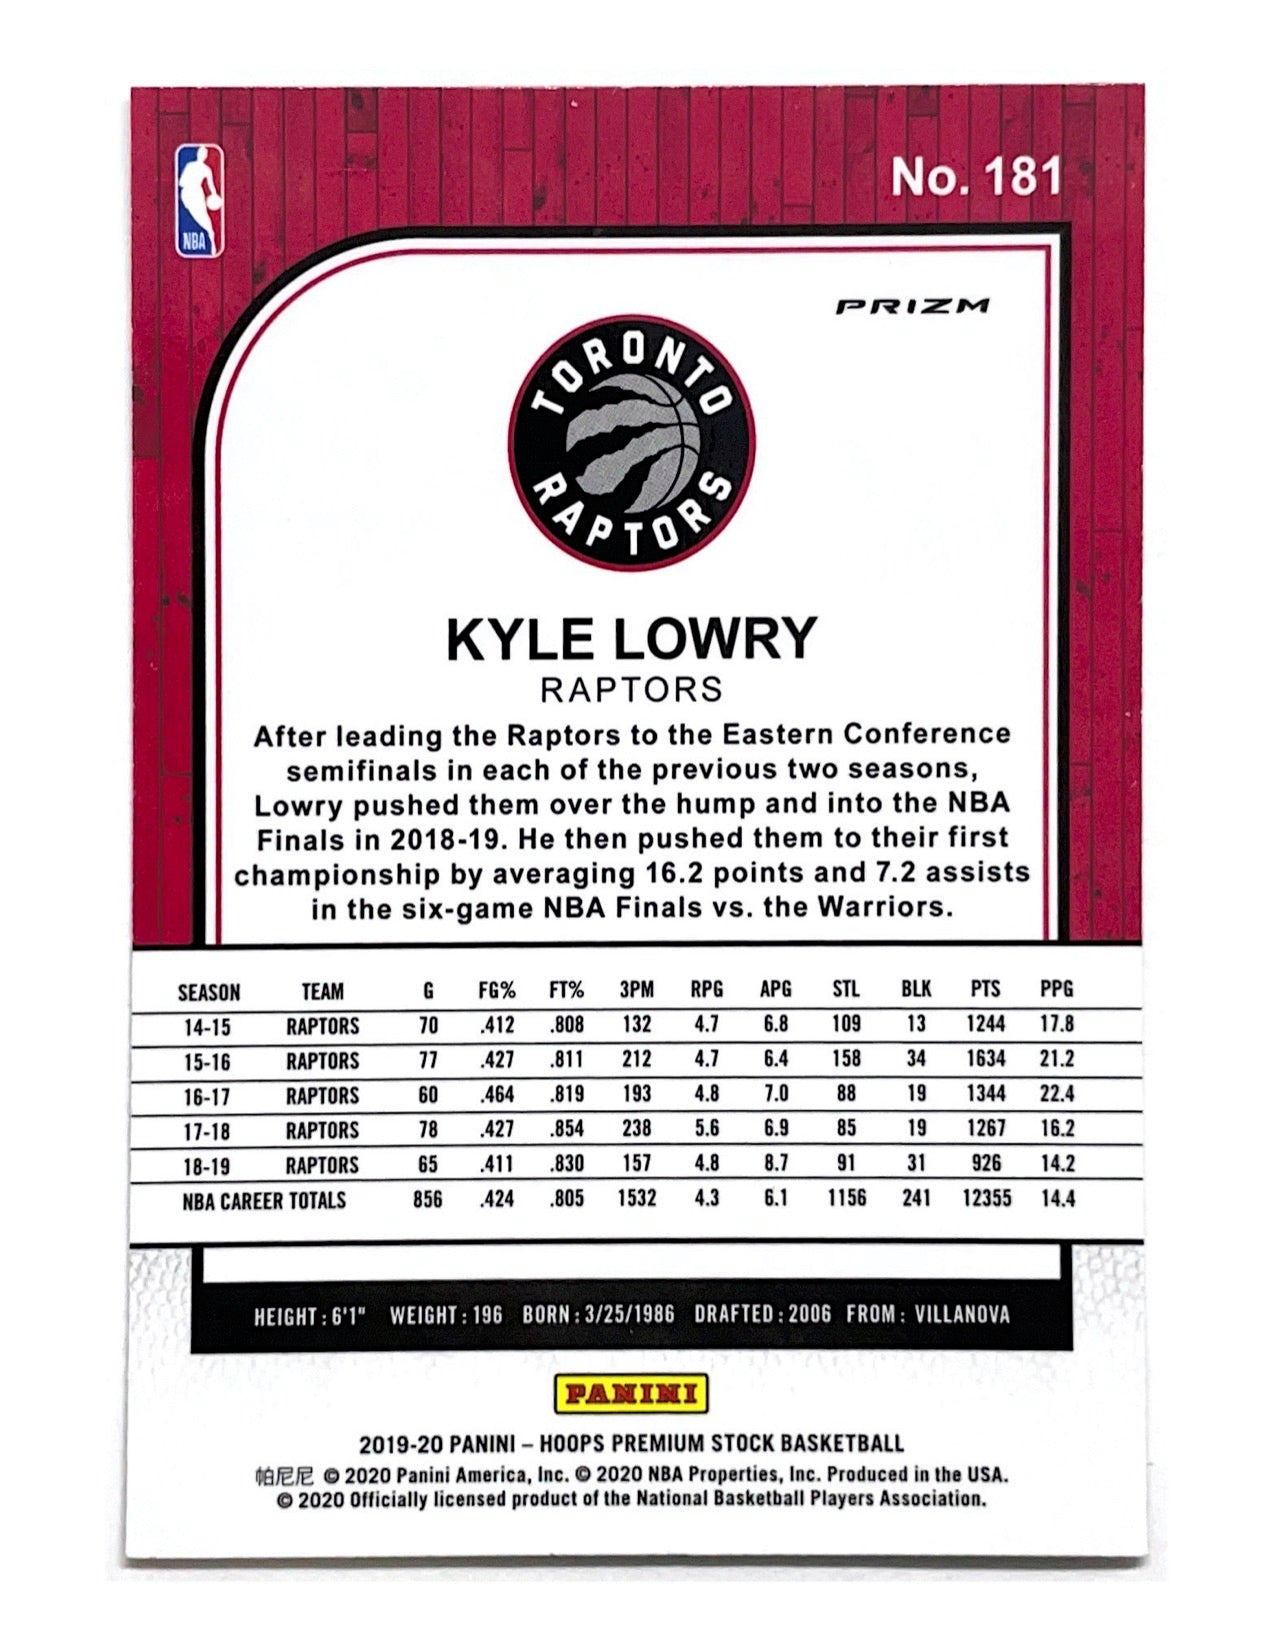 Kyle Lowry 2019-20 Panini Hoops Premium Stock Lazer Prizm #181